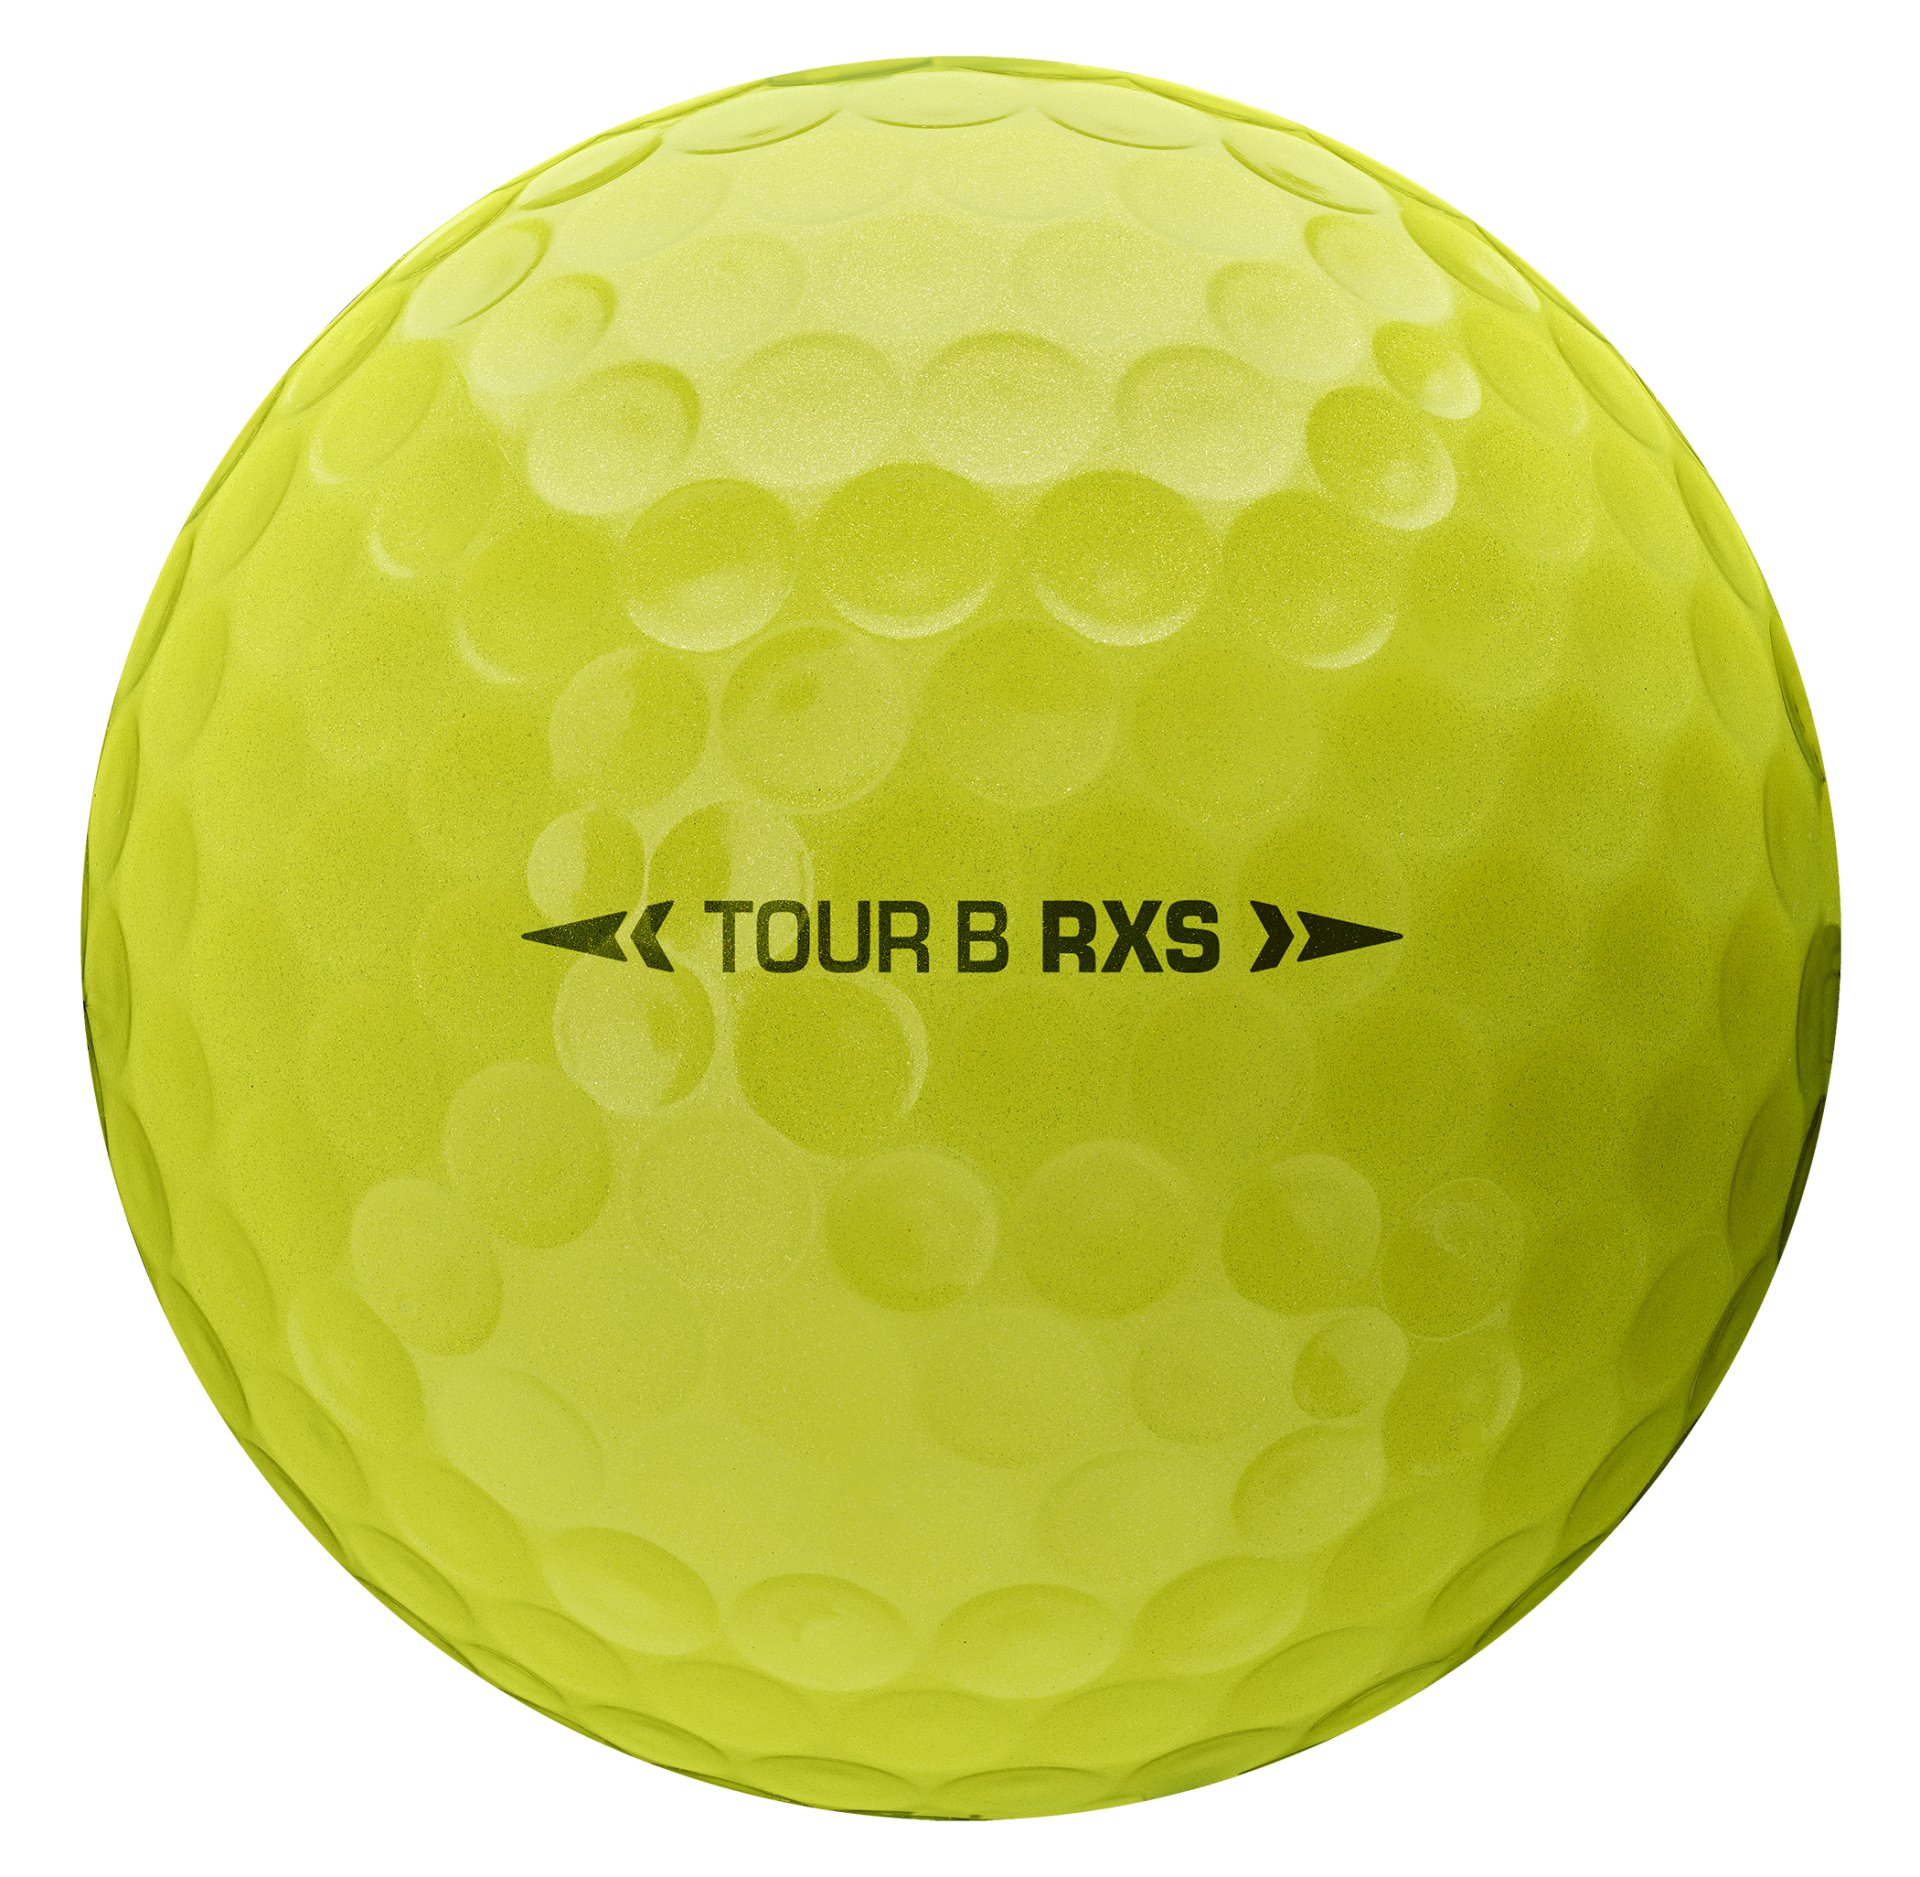 BRIDGESTONE GOLF TOUR B RXS Golf Balls YELLOW - zvìtšit obrázek